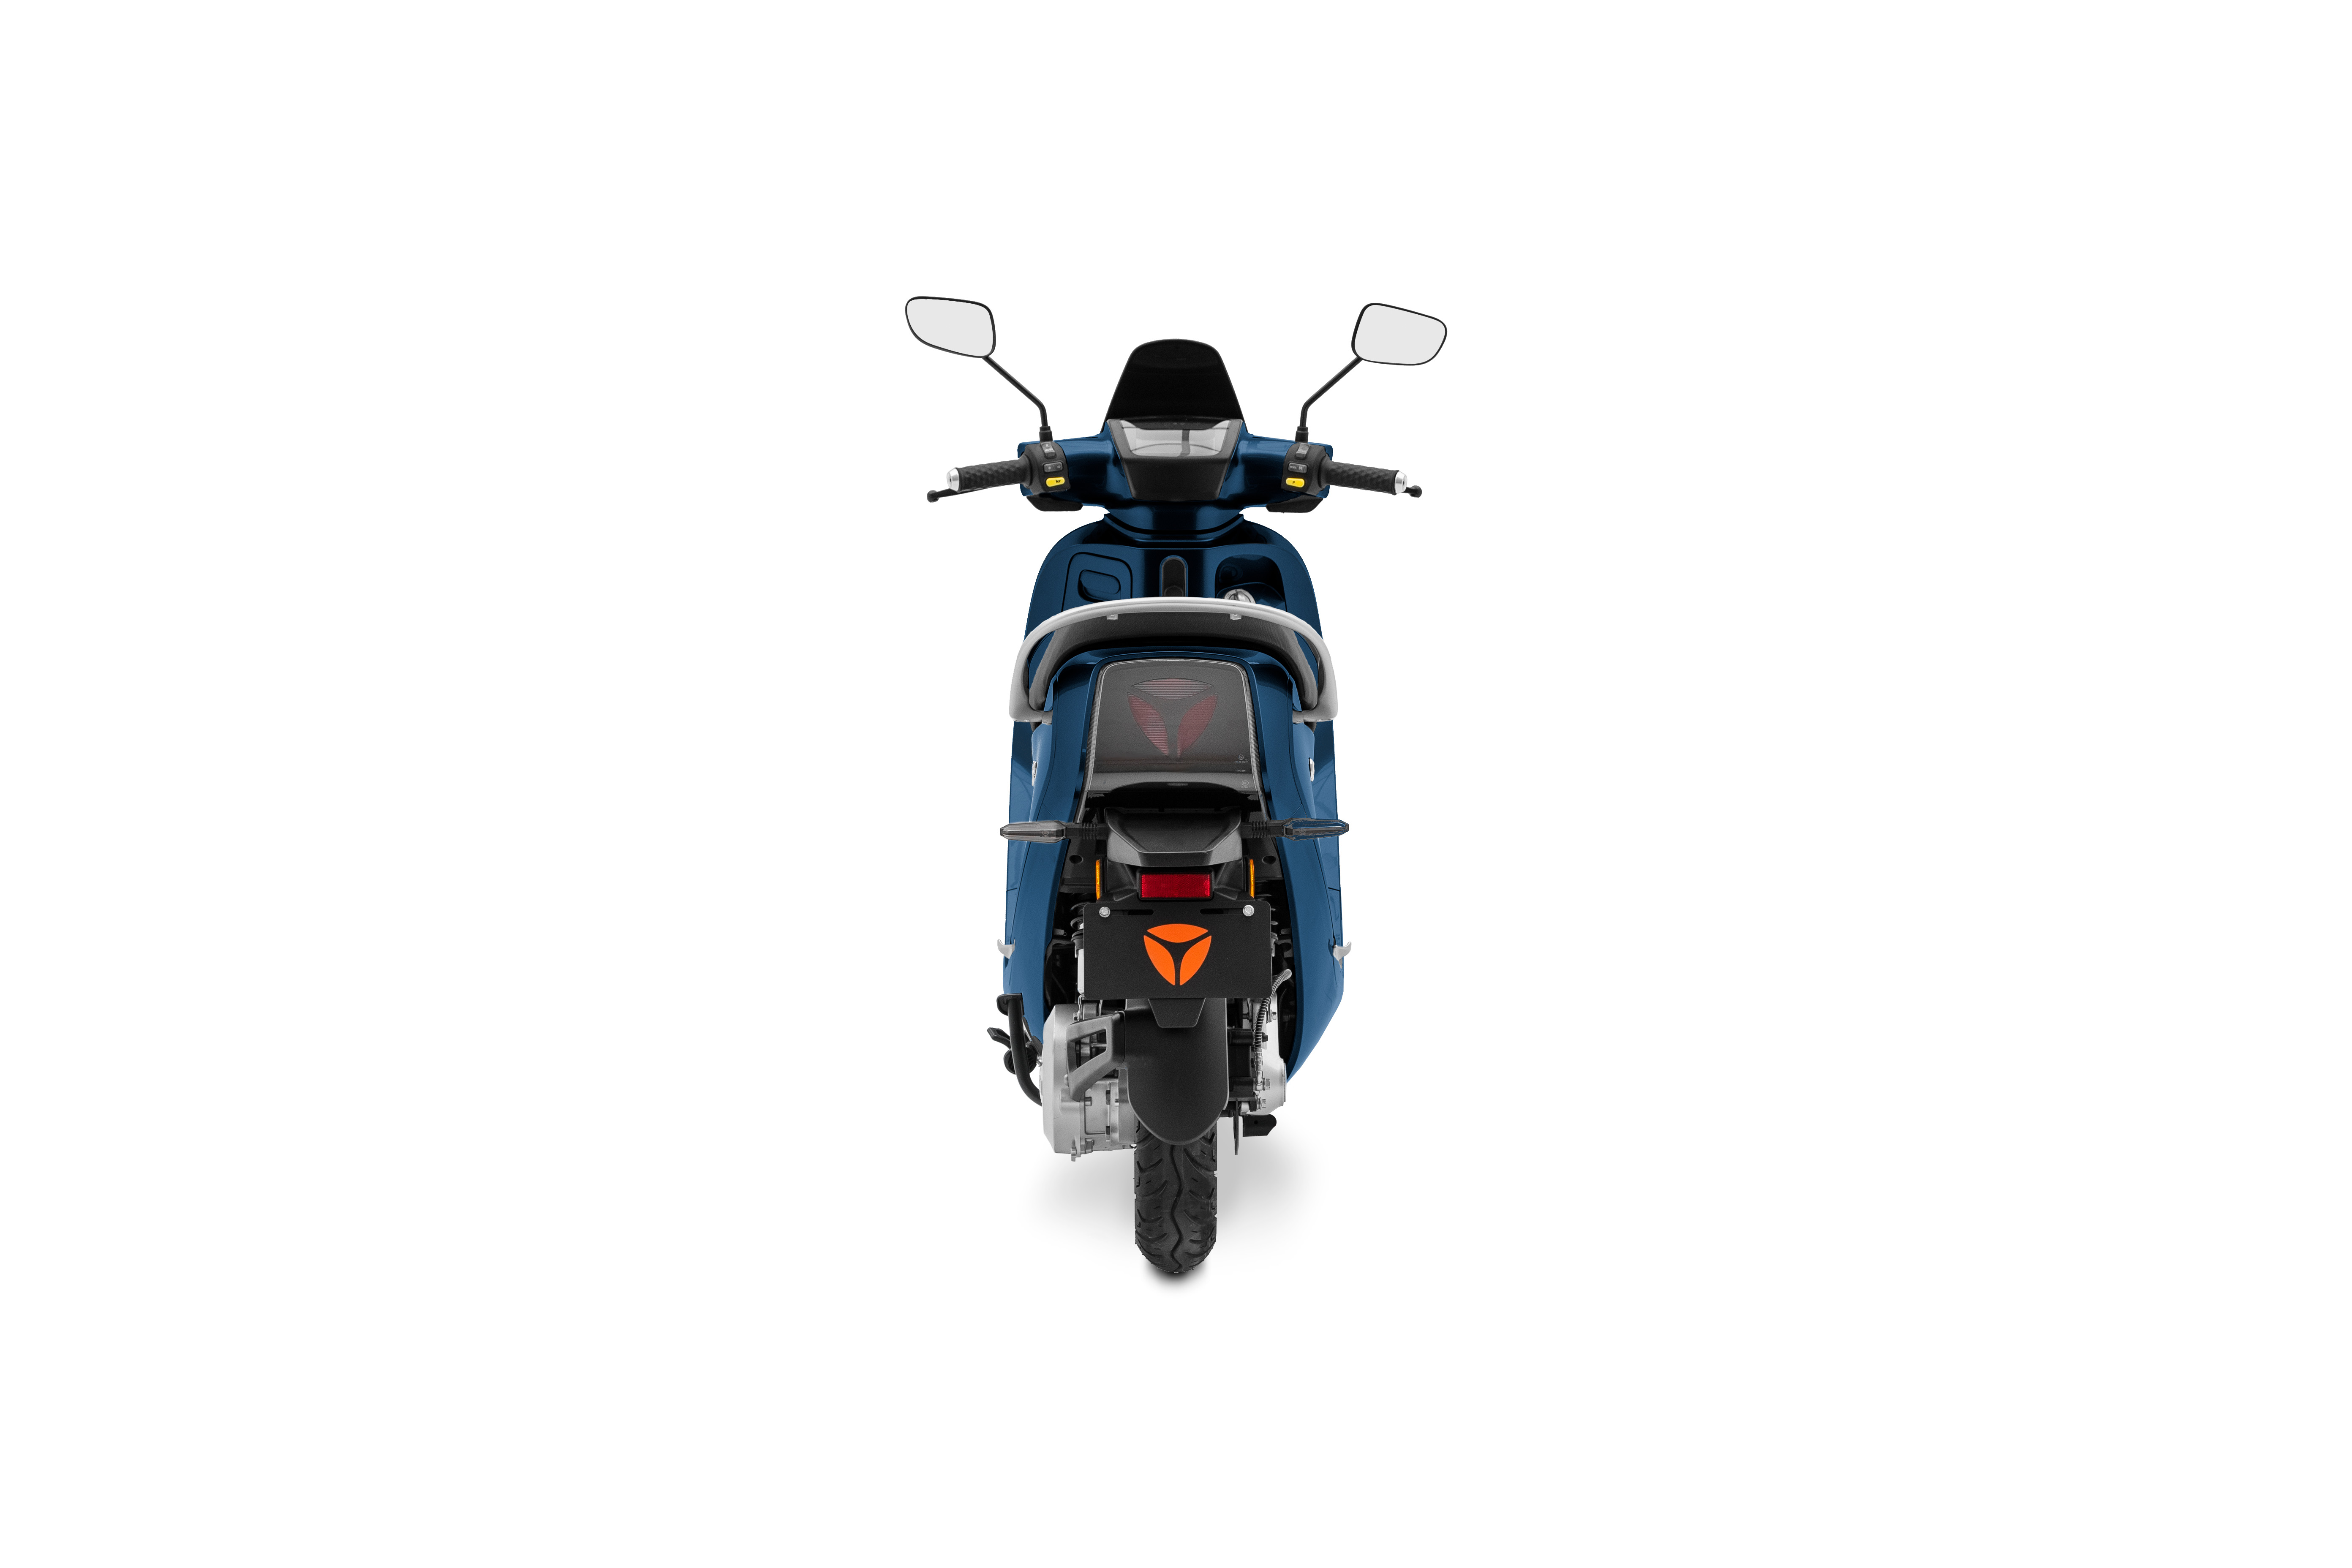 Compra una moto Haojue nueva en línea  BiMoto en Línea - Banco Industrial  Guatemala